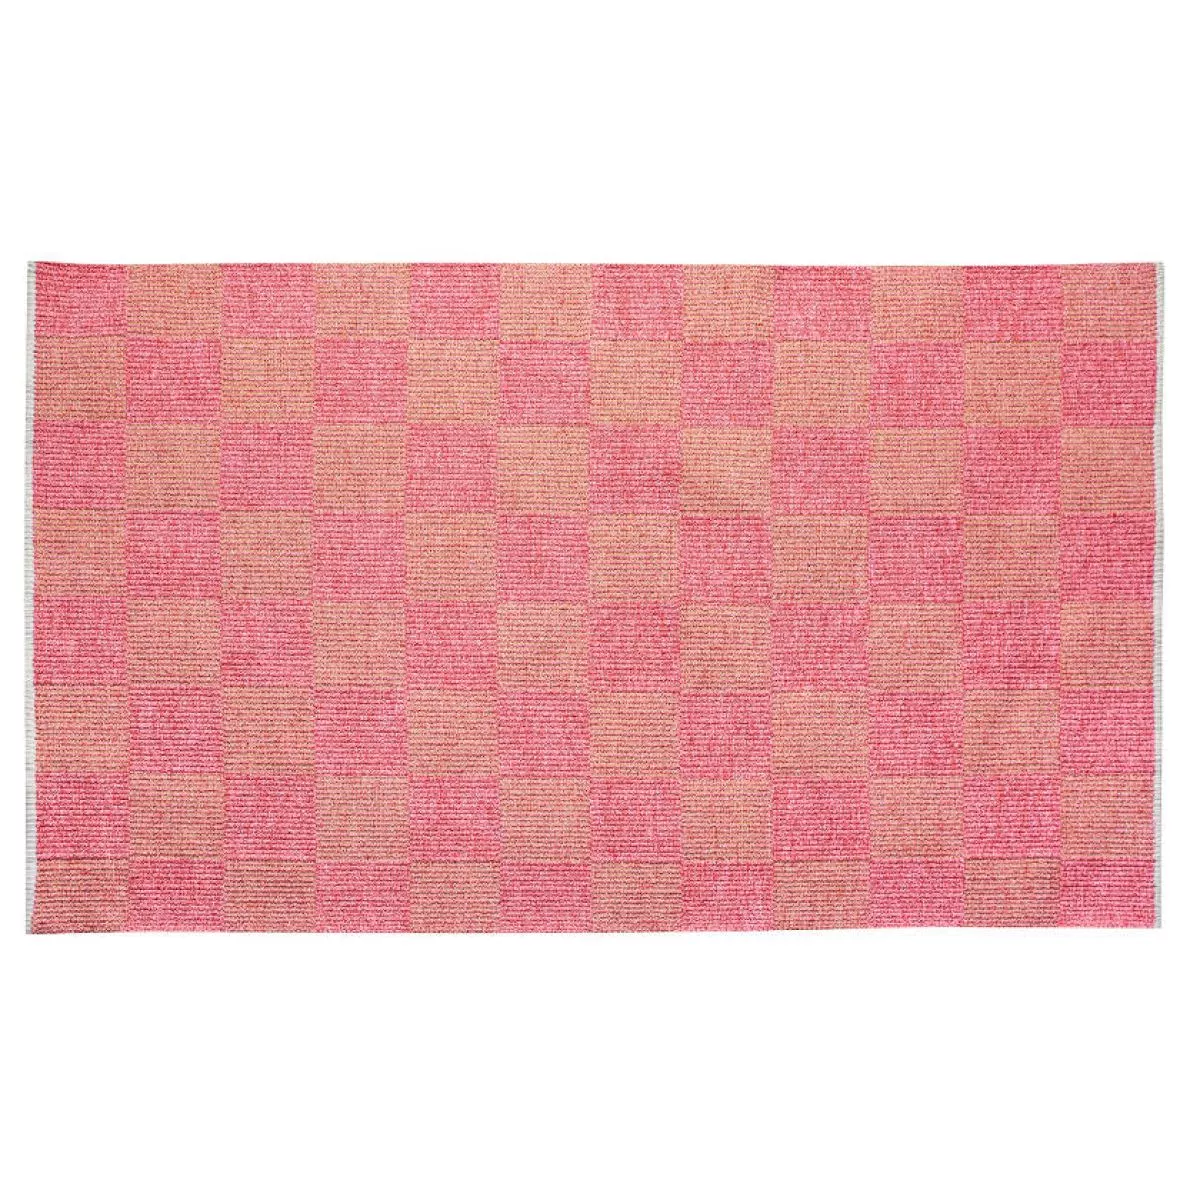 Rosa Ausführung: Handgewebter Teppich Square aus Kork, Baumwolle, Wolle | Kunstbaron